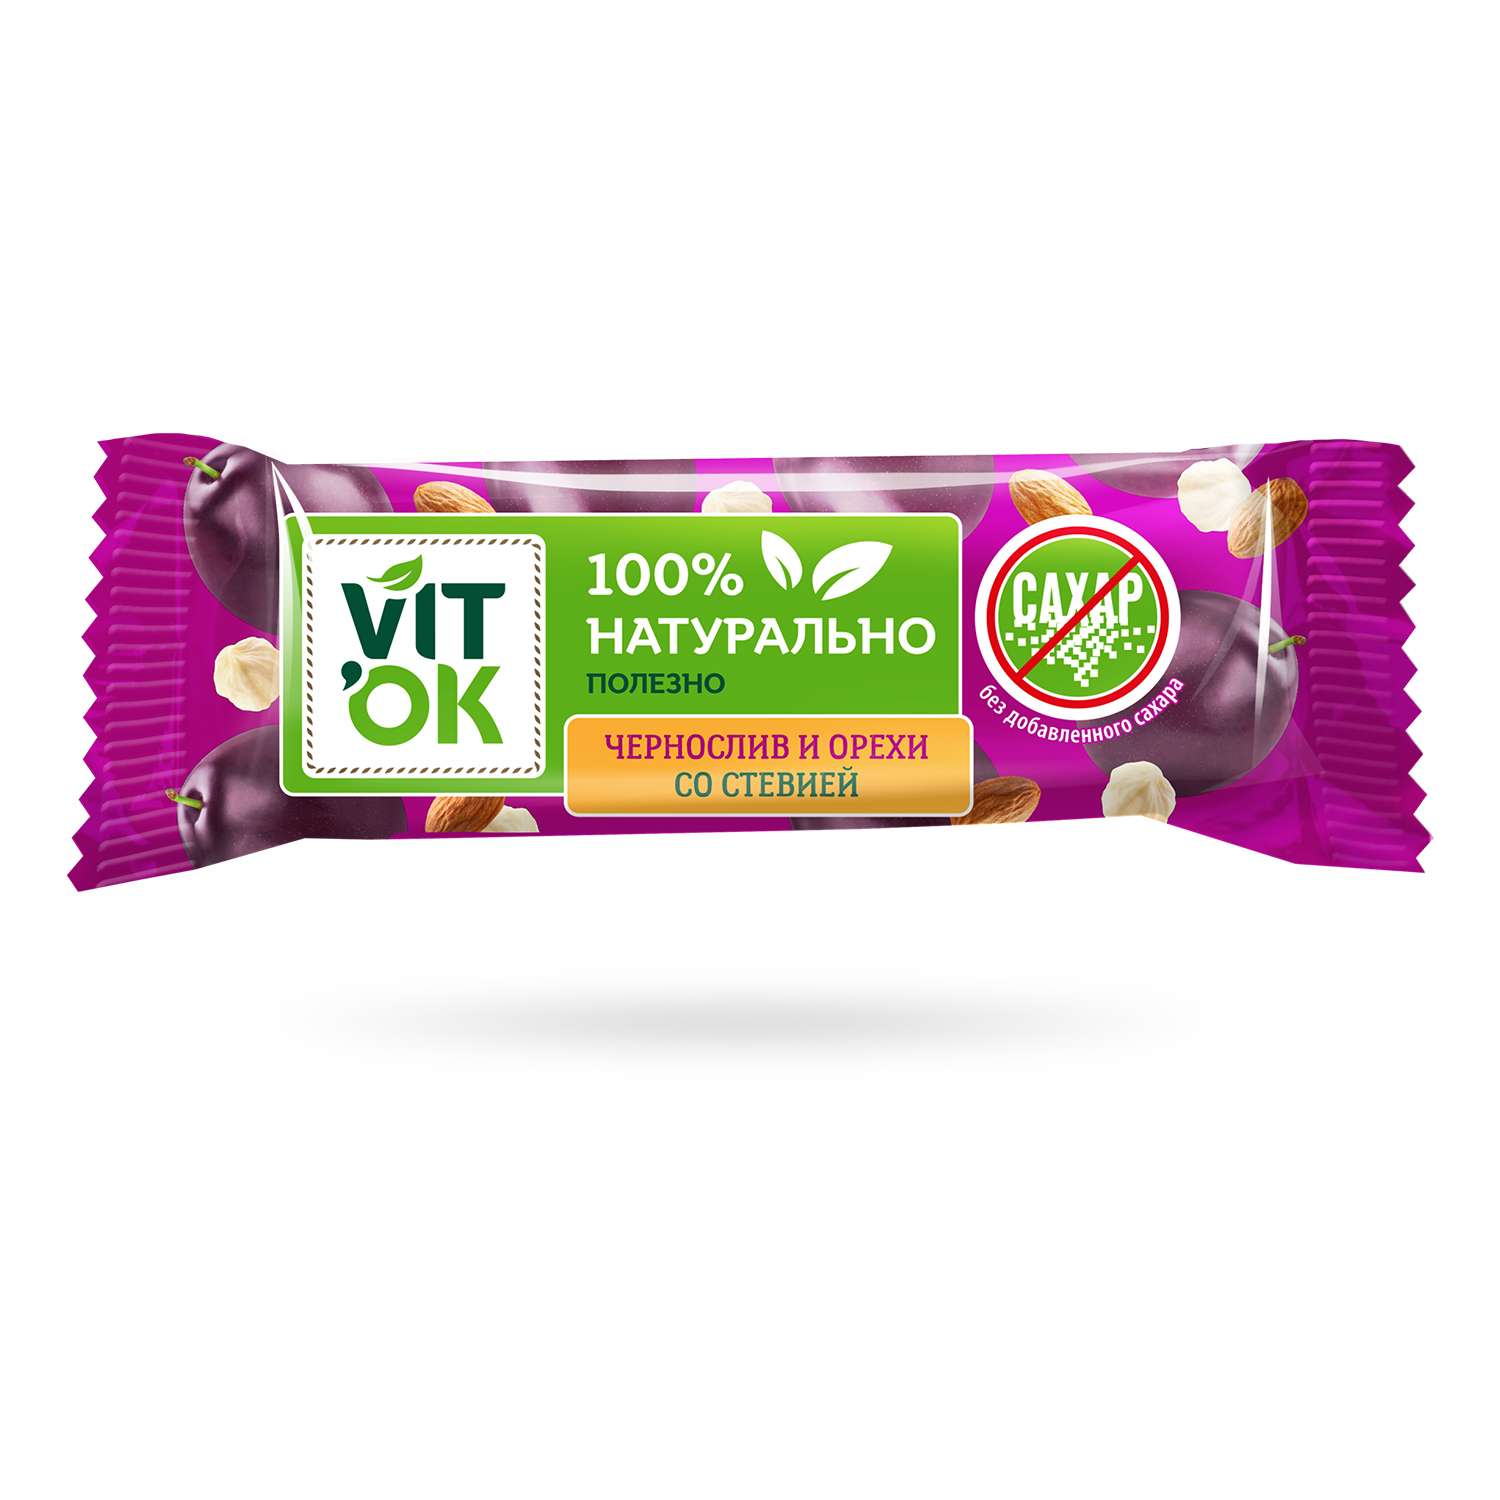 Батончики VITok Полезный 100% натуральный Чернослив и орехи без сахара 18 шт. по 30 г - фото 2